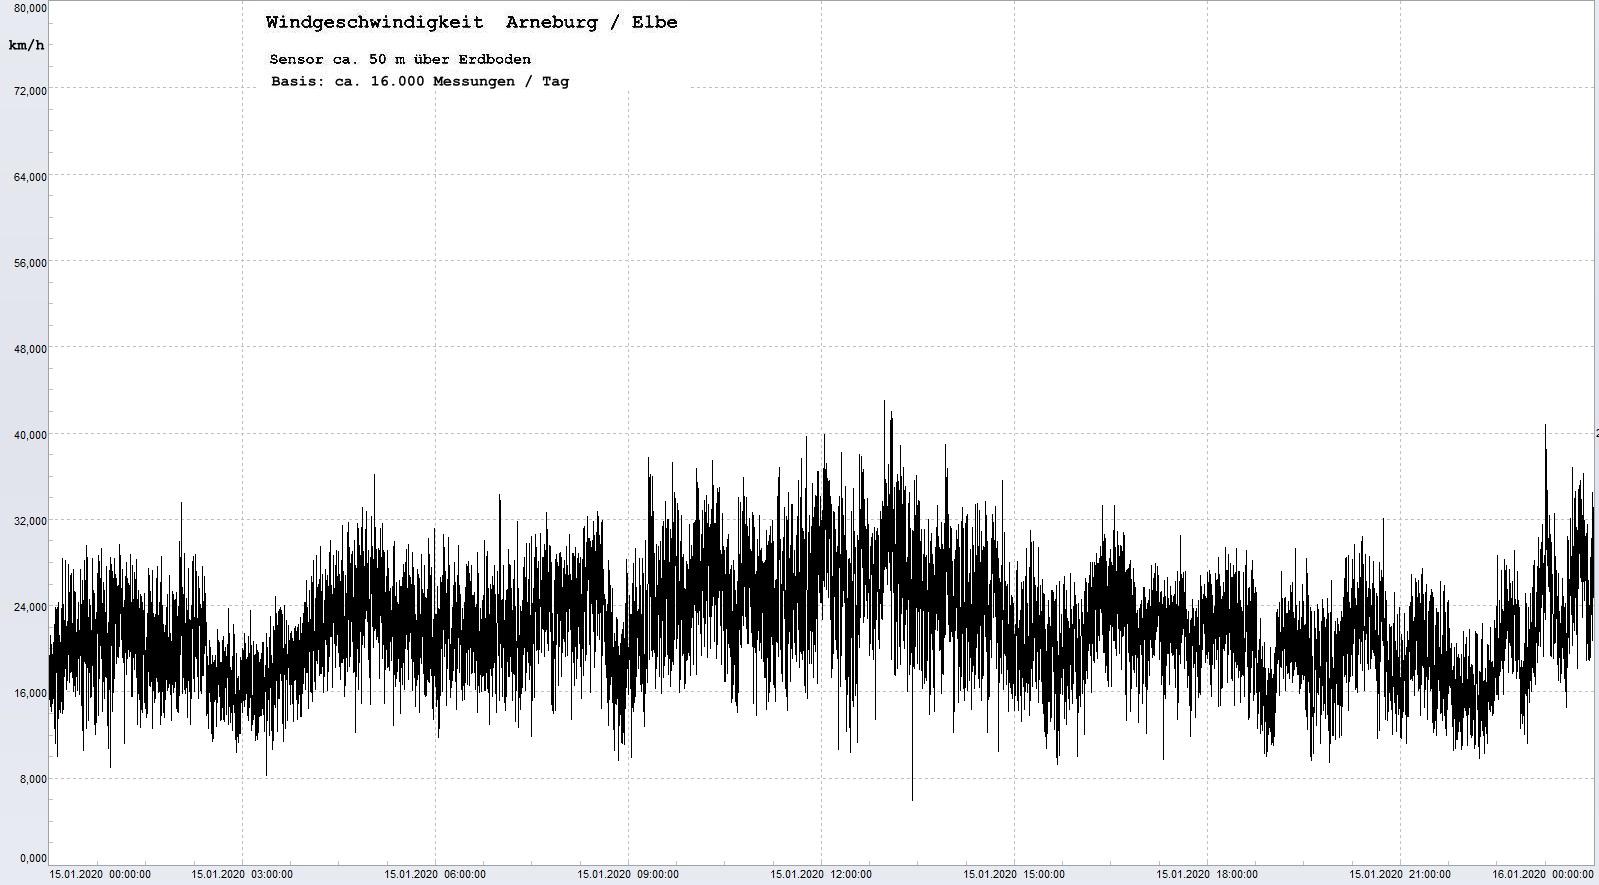 Arneburg Tages-Diagramm Winddaten, 15.01.2020
  Histogramm, Sensor auf Gebude, ca. 50 m ber Erdboden, Basis: 5s-Aufzeichnung